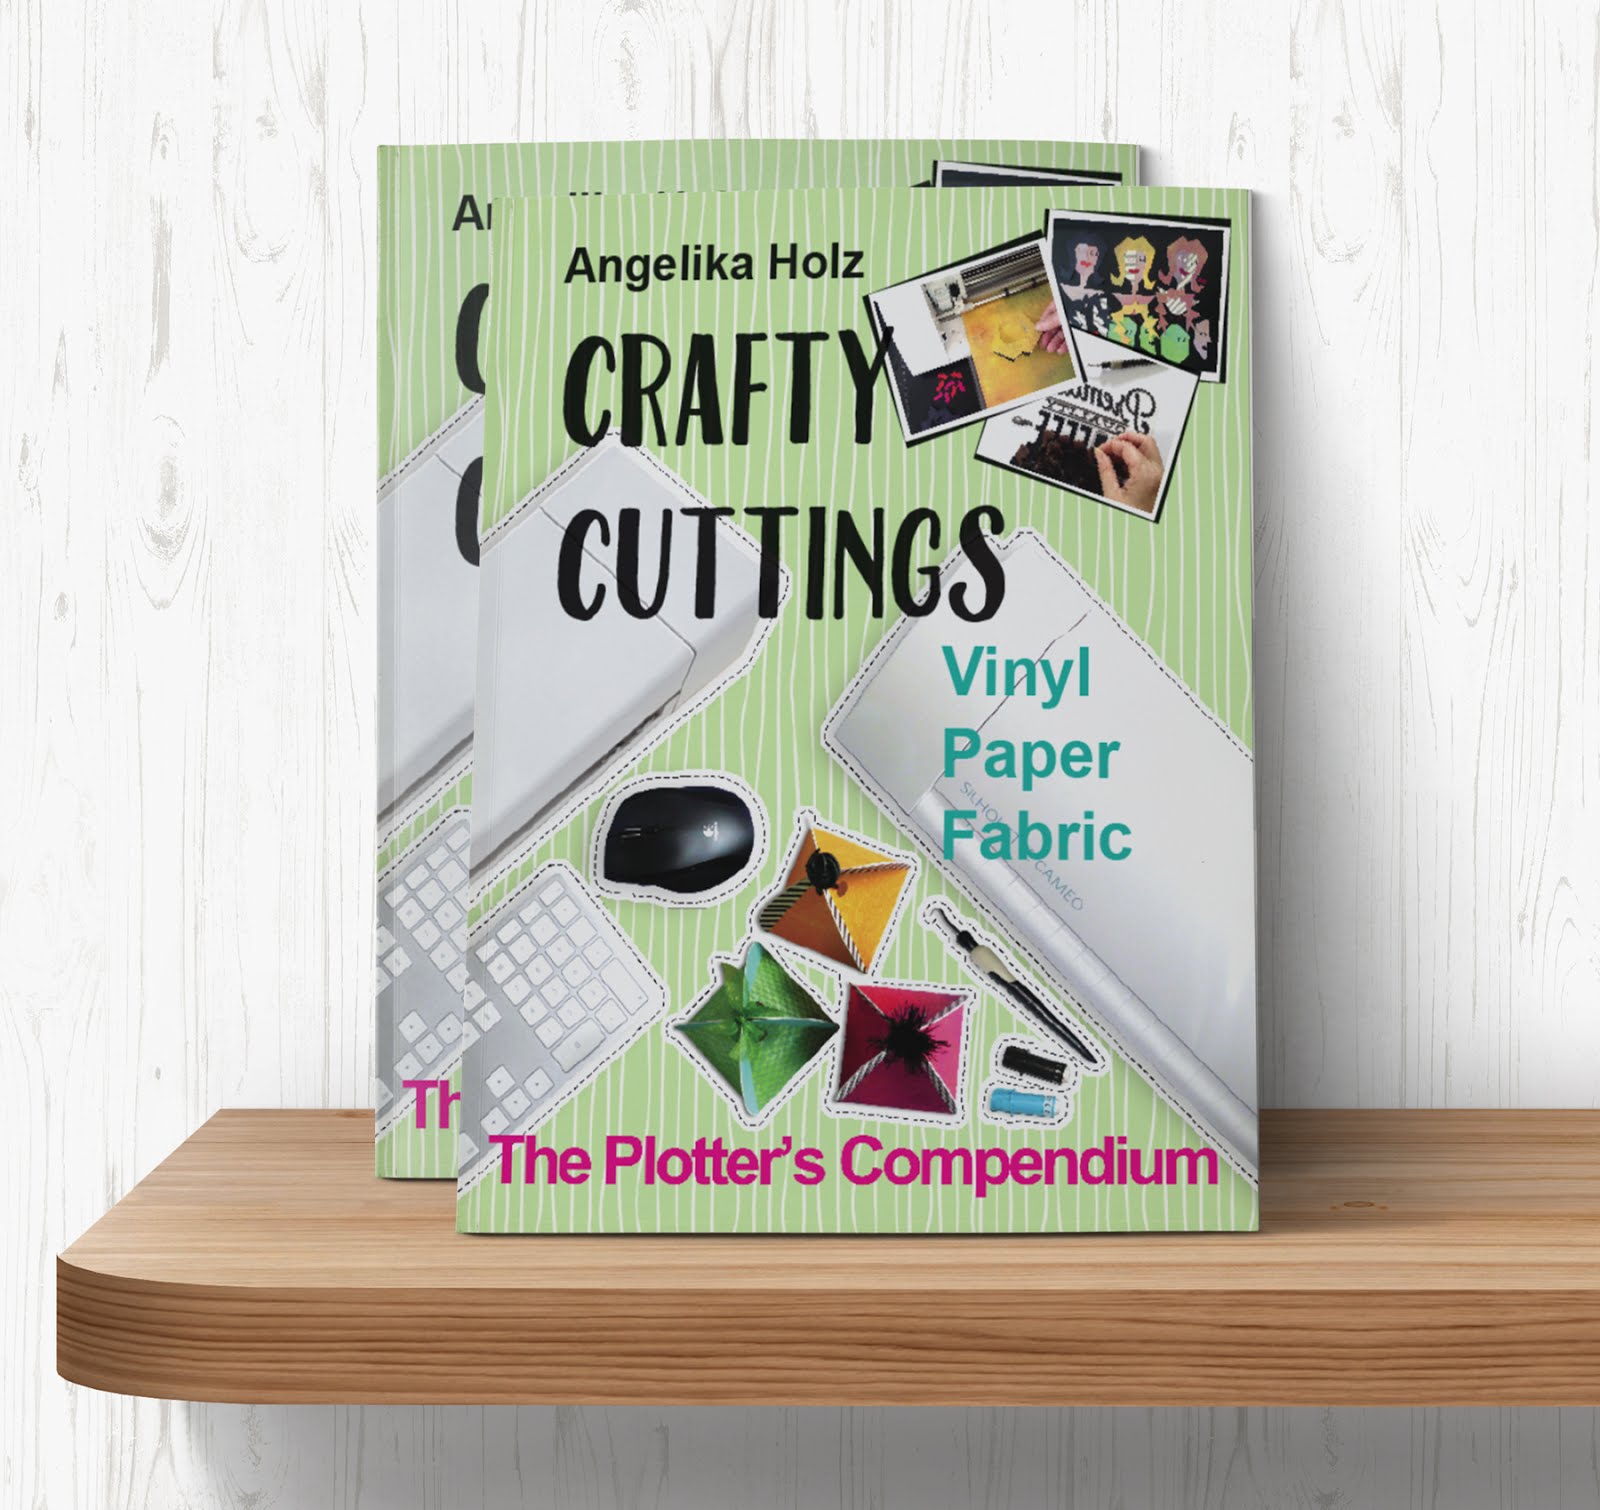 "Crafty Cuttings"